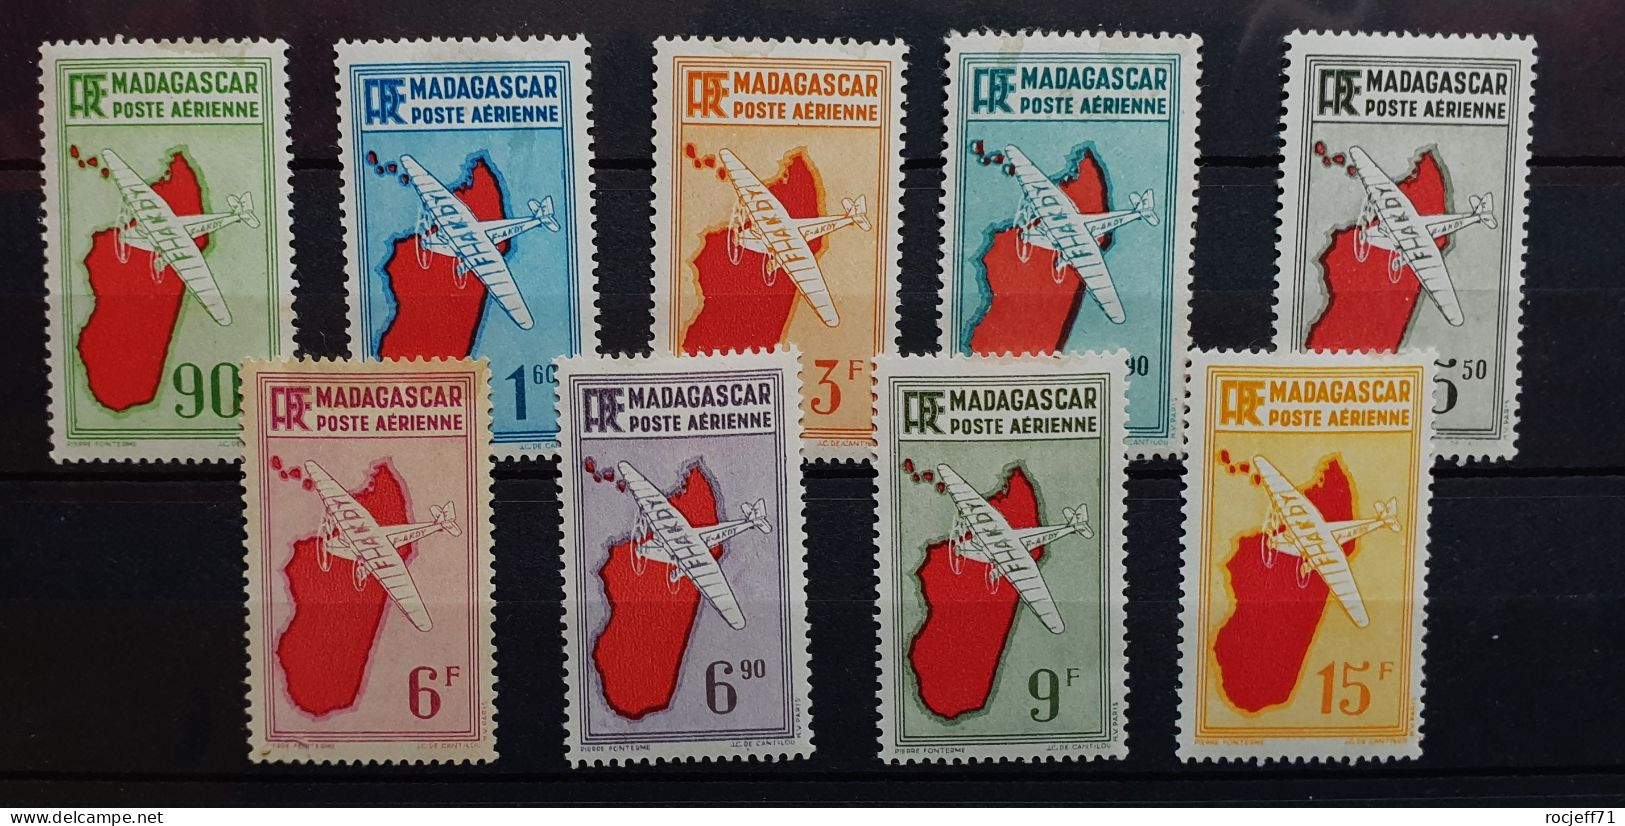 04 - 24 - Madagascar - Poste Aérienne N°16 à 24 * - MH - Série Complète - Poste Aérienne